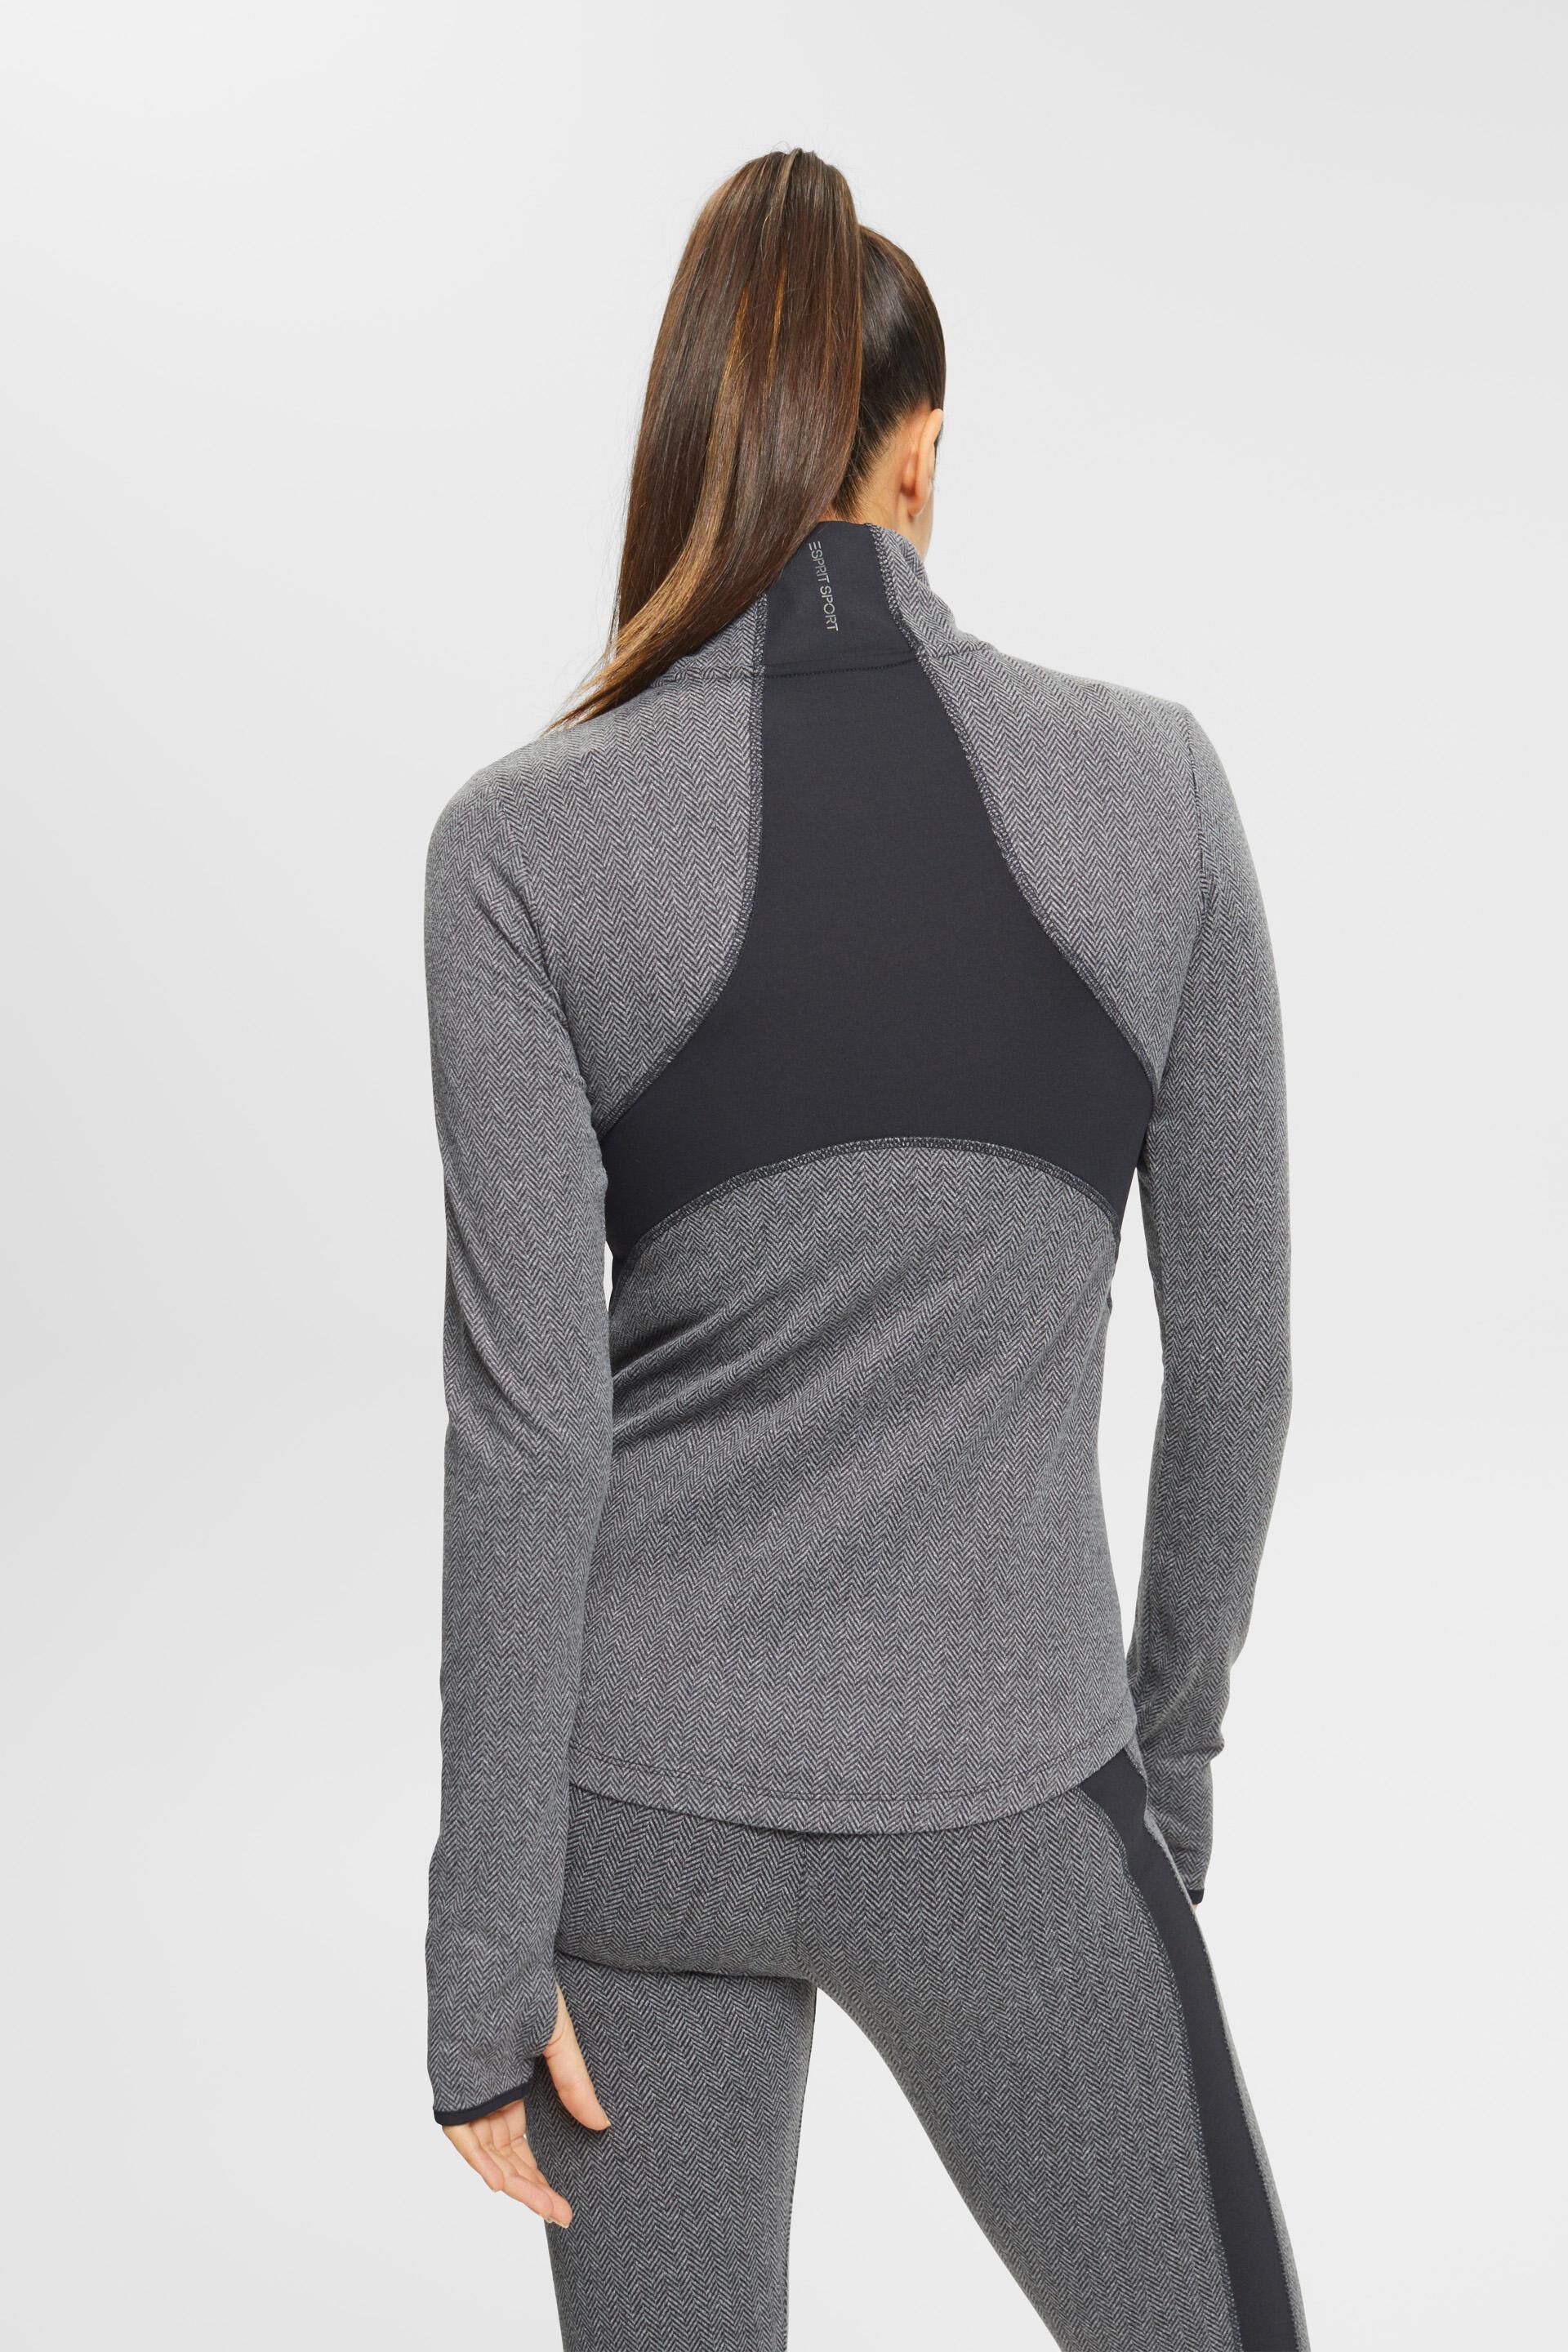 ESPRIT - Half-zip long sleeve top with herringbone pattern at our 